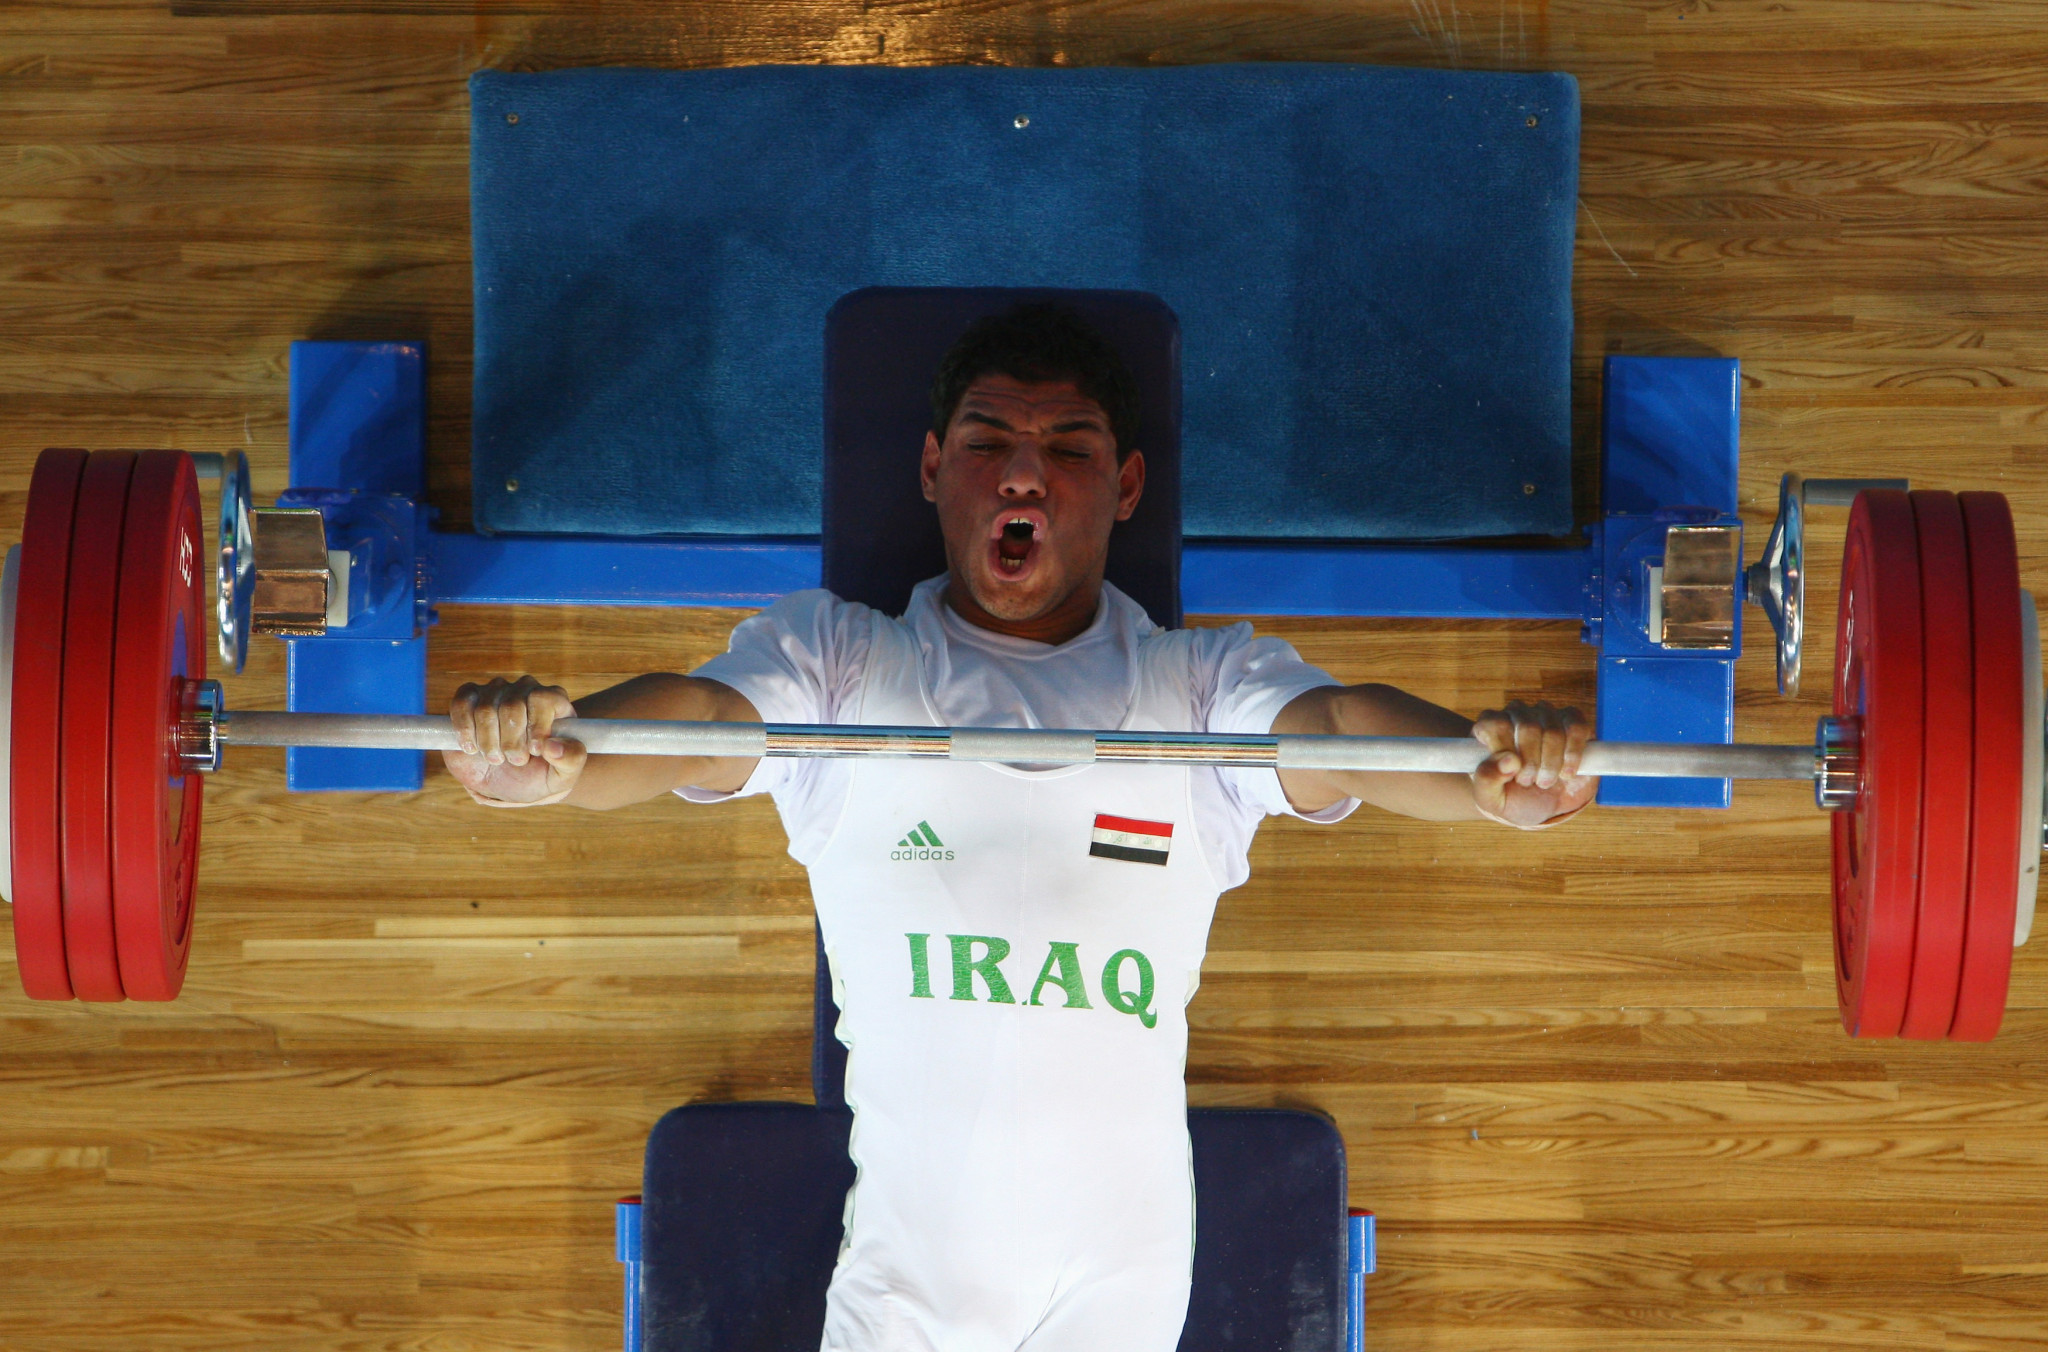 Rasool Mohsin broke a world record in Dubai ©Getty Images